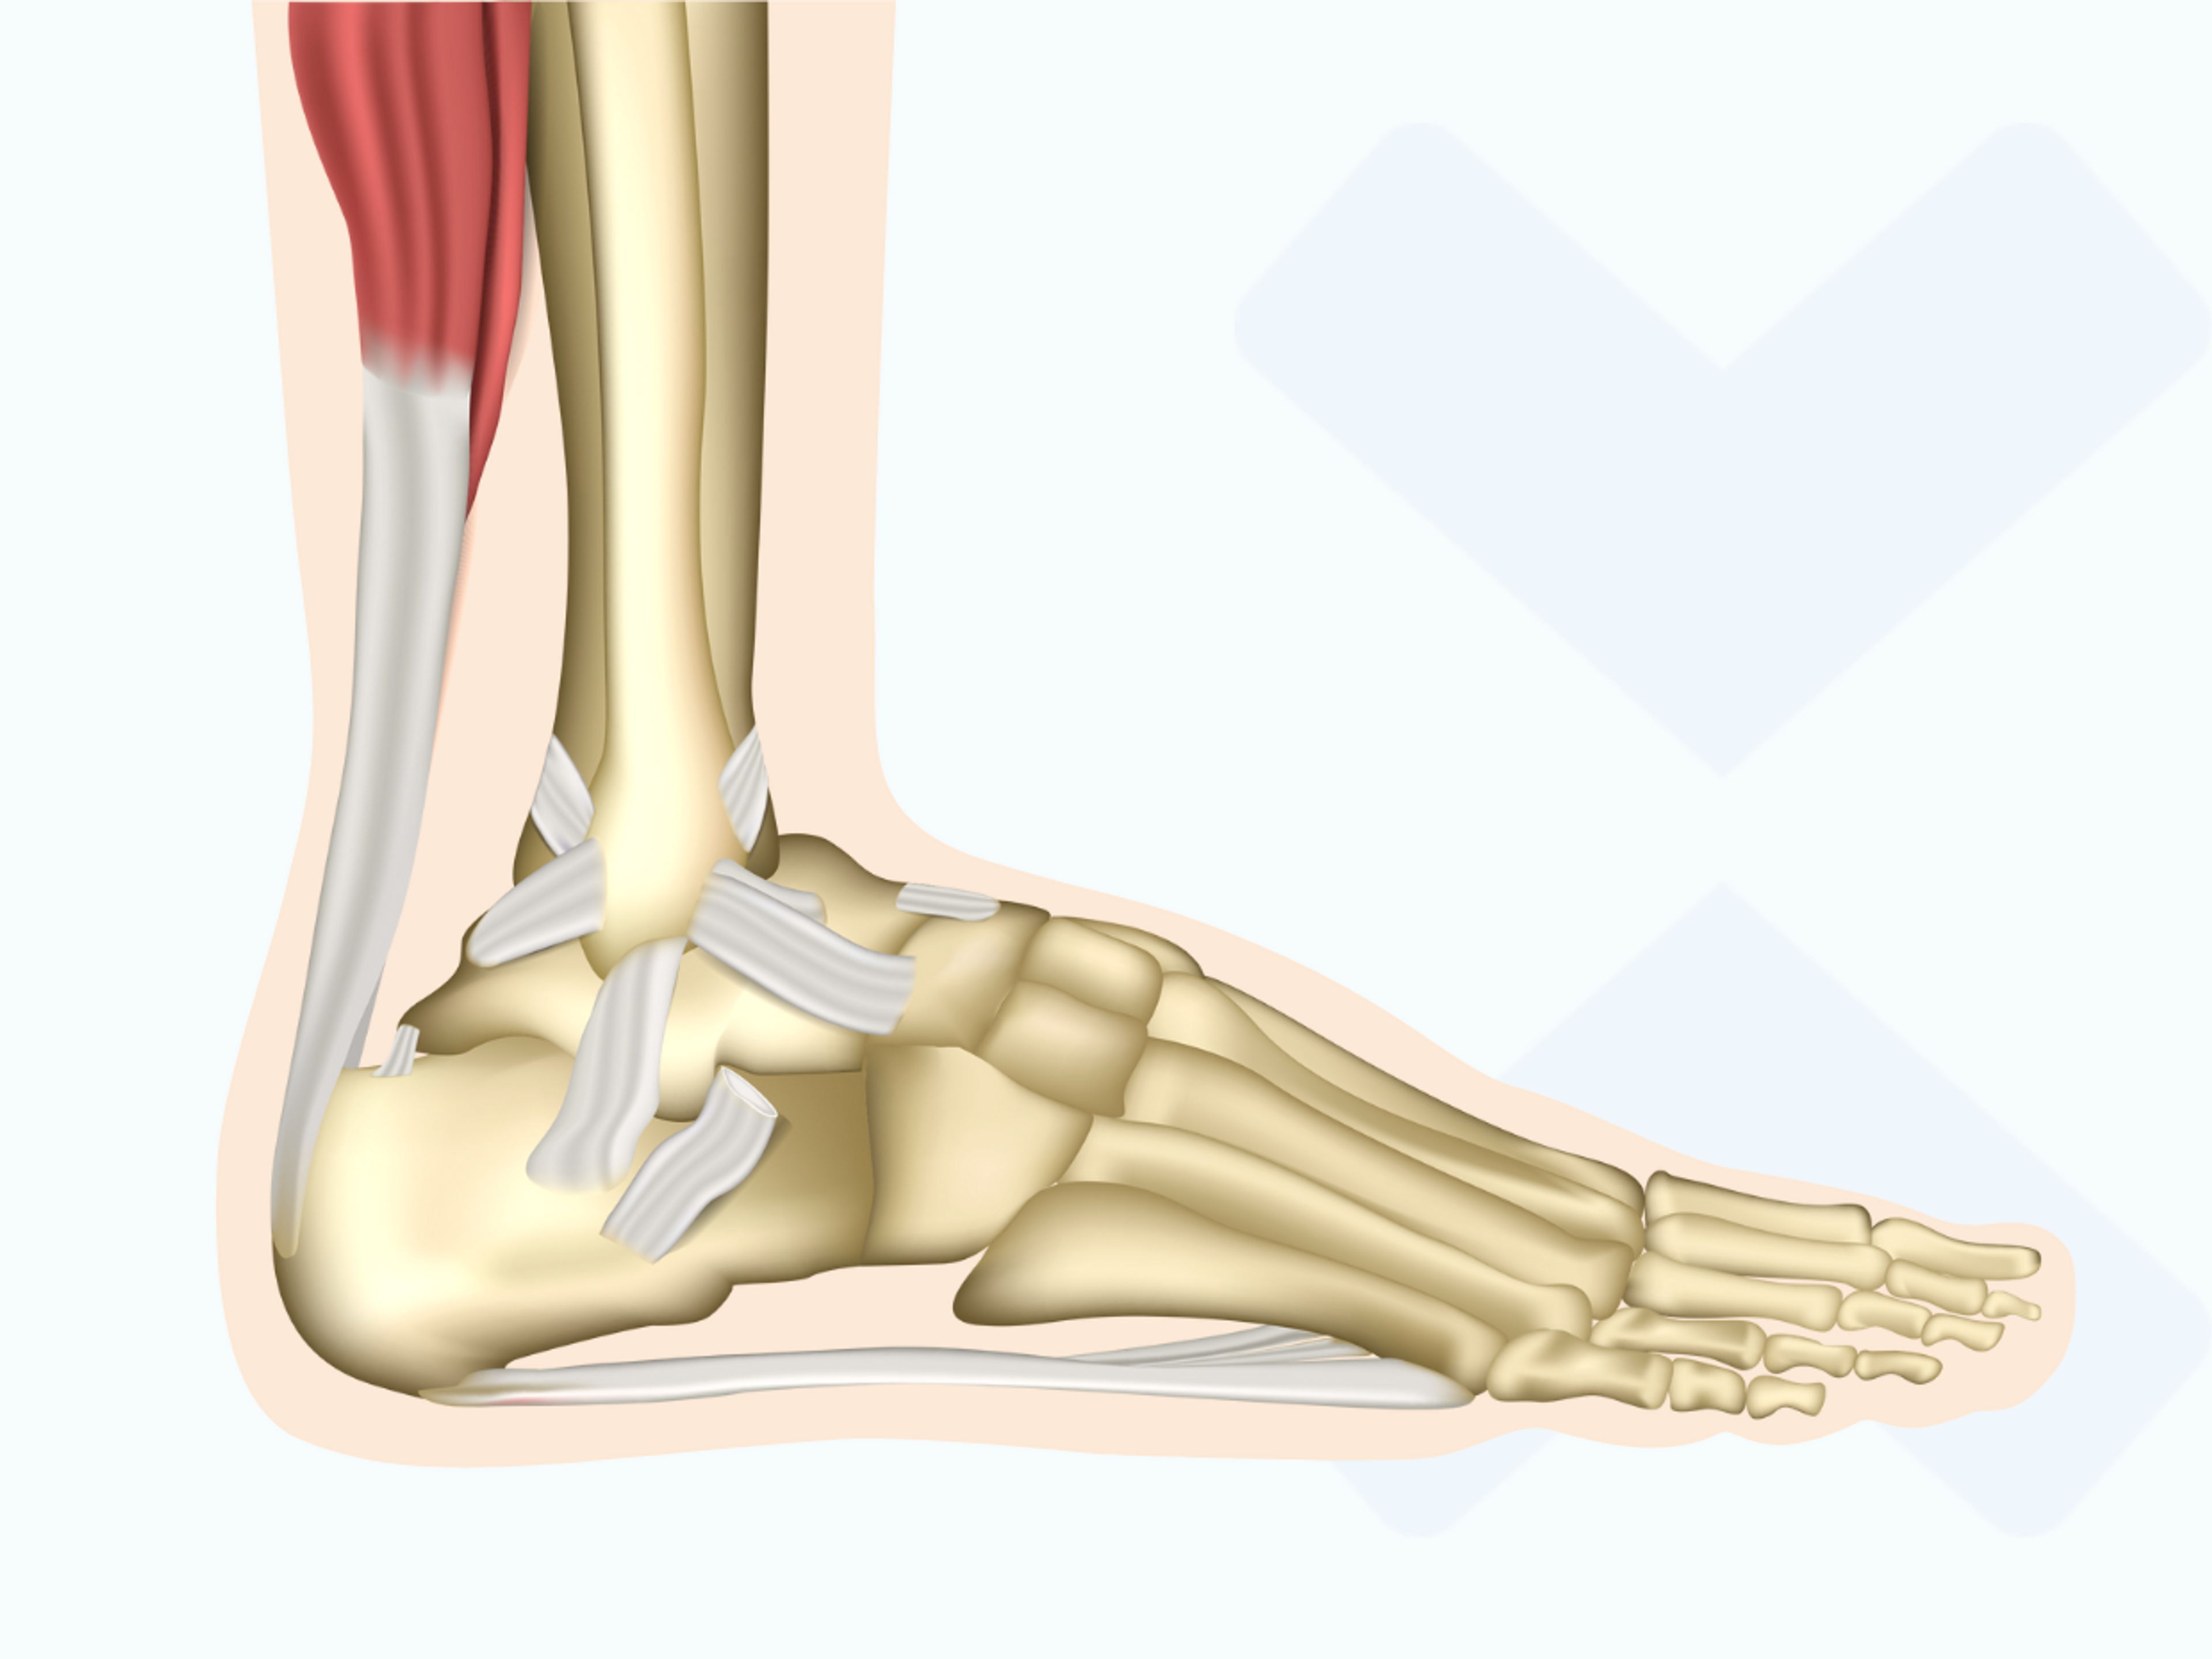 Die Bänder des Sprunggelenks: Bei einem verstauchten Fuß können verschiedene Bänder betroffen sein. Das muss bei der Behandlung berücksichtigt werden.